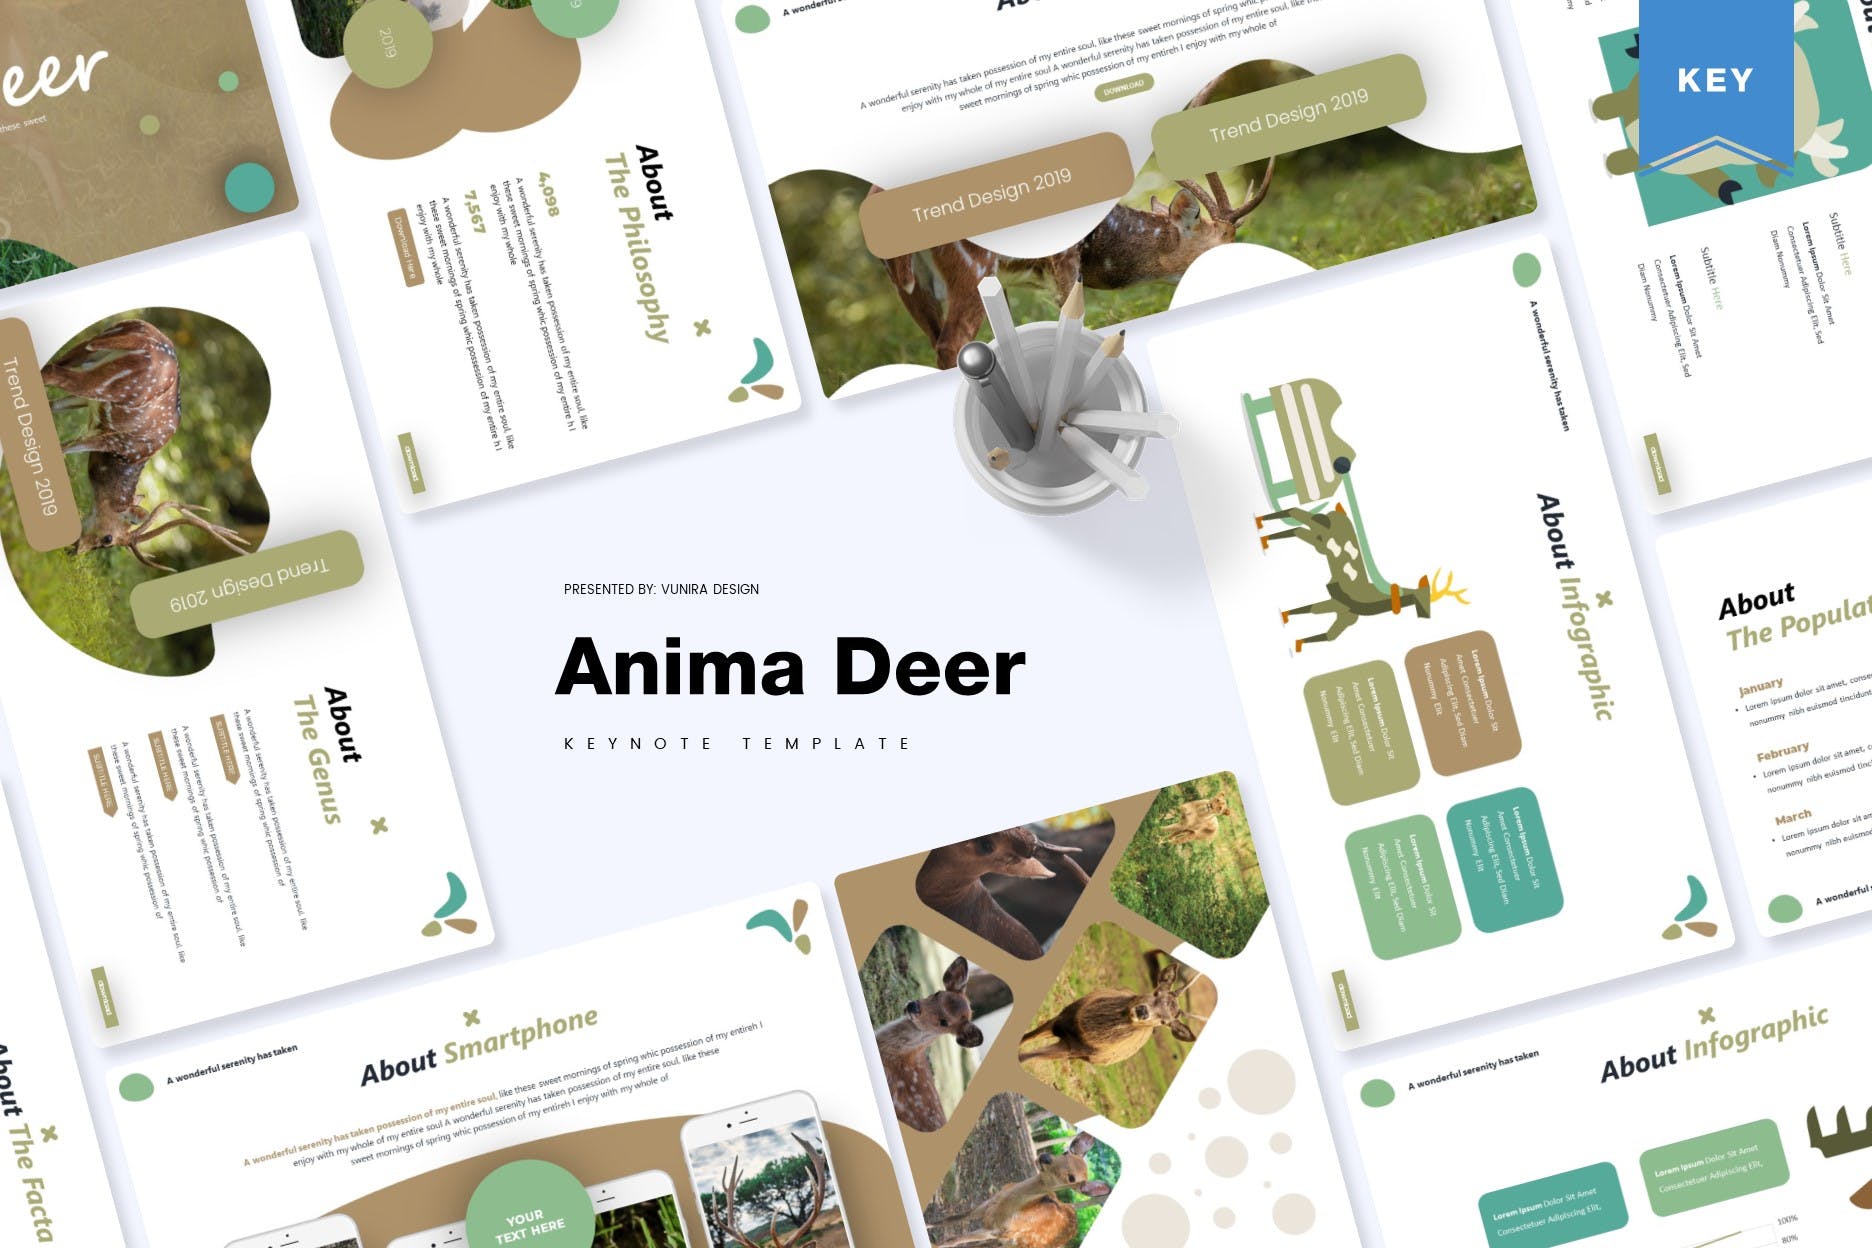 动物研究可爱风格儿童主题Keynote幻灯片模板 Anima Deer | Keynote Template插图